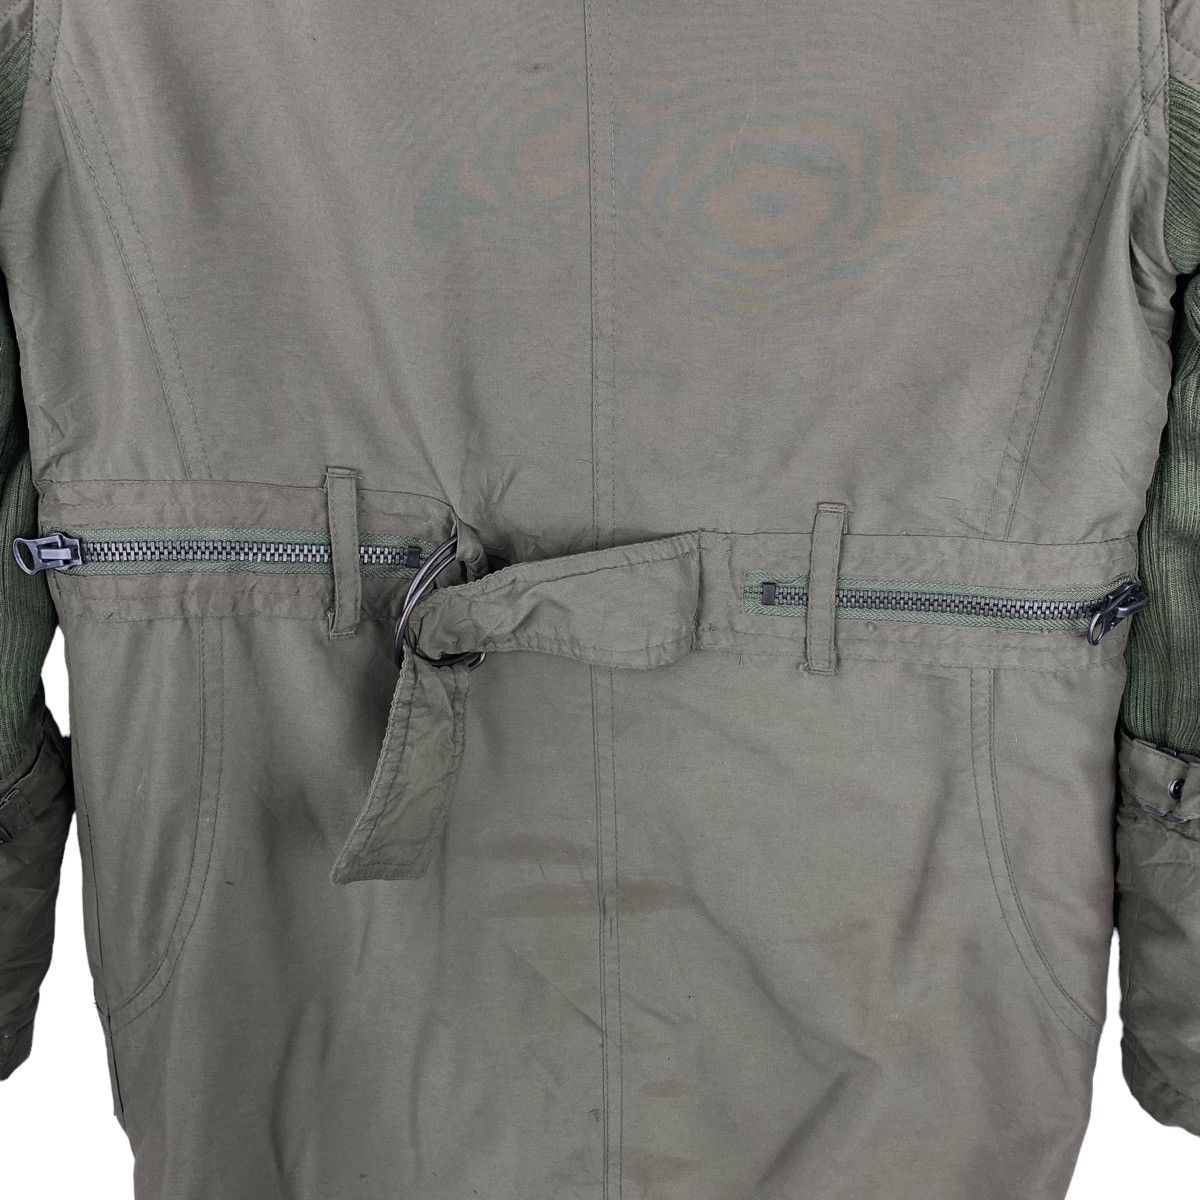 Designer Rare !! MAISON GILFY Long jacket jacket Size US S / EU 44-46 / 1 - 8 Thumbnail